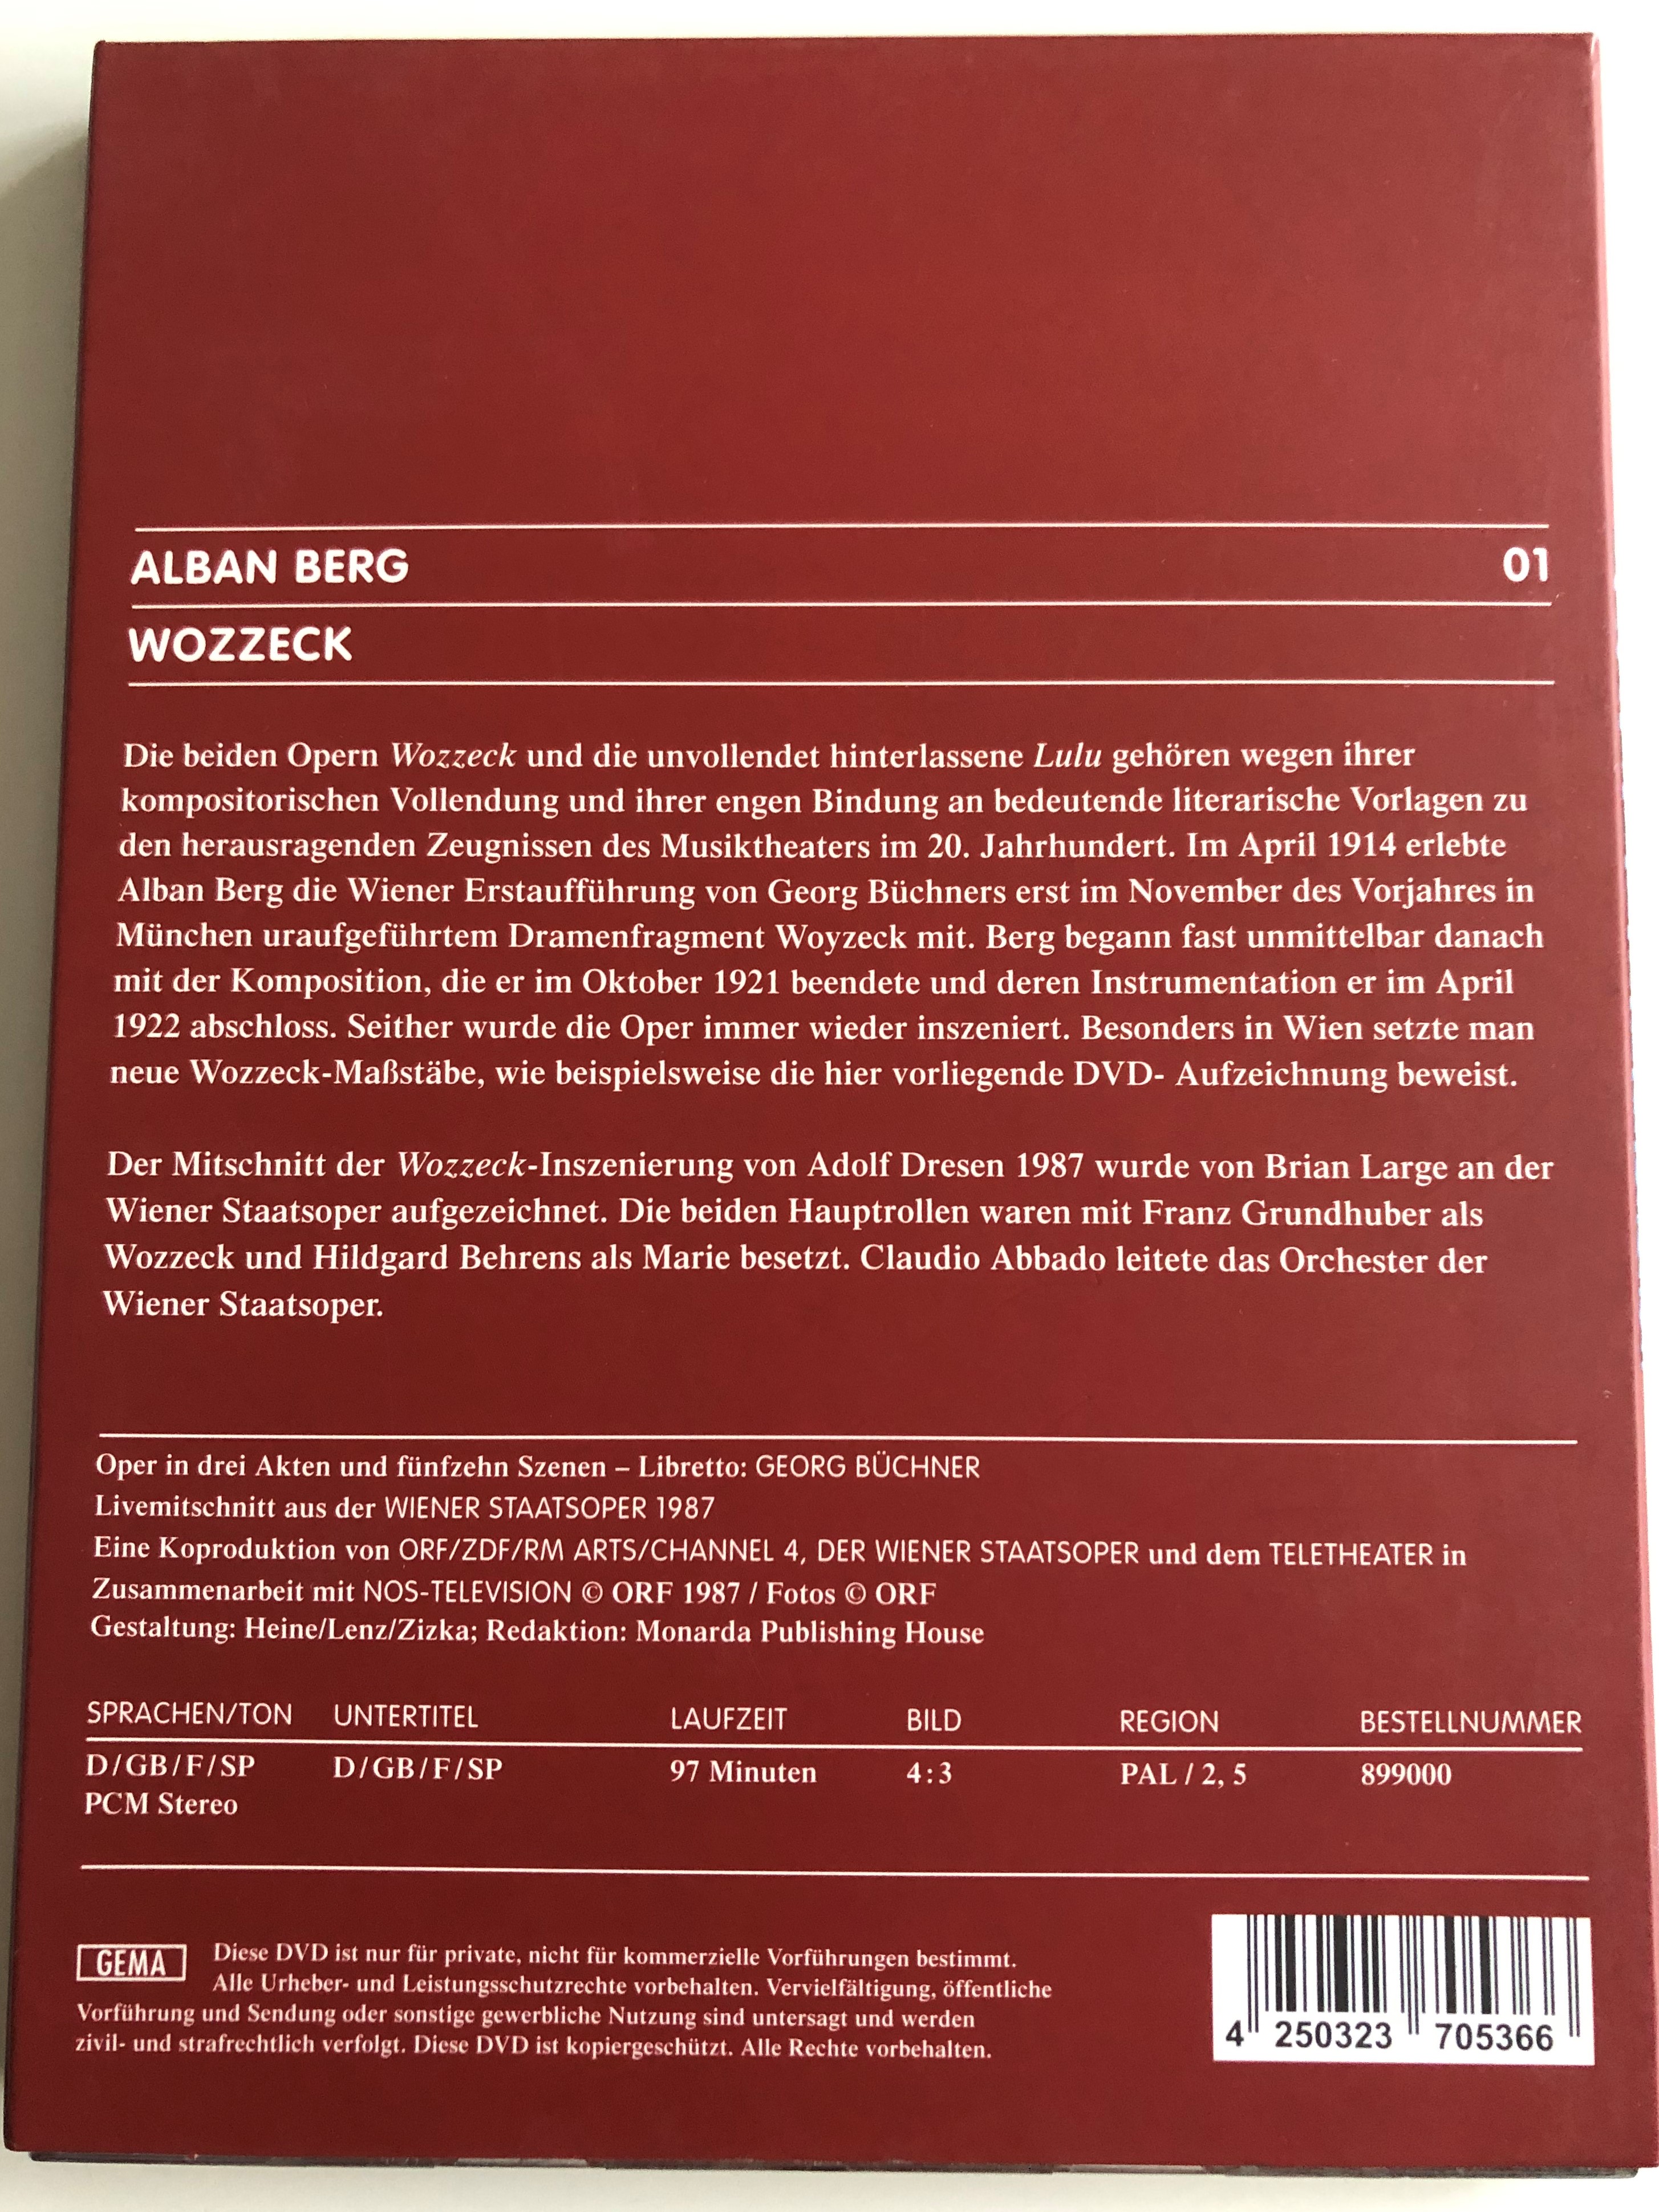 alben-berg-01-wozzeck-dvd-1987-zweitausendeins-edition-6.jpg